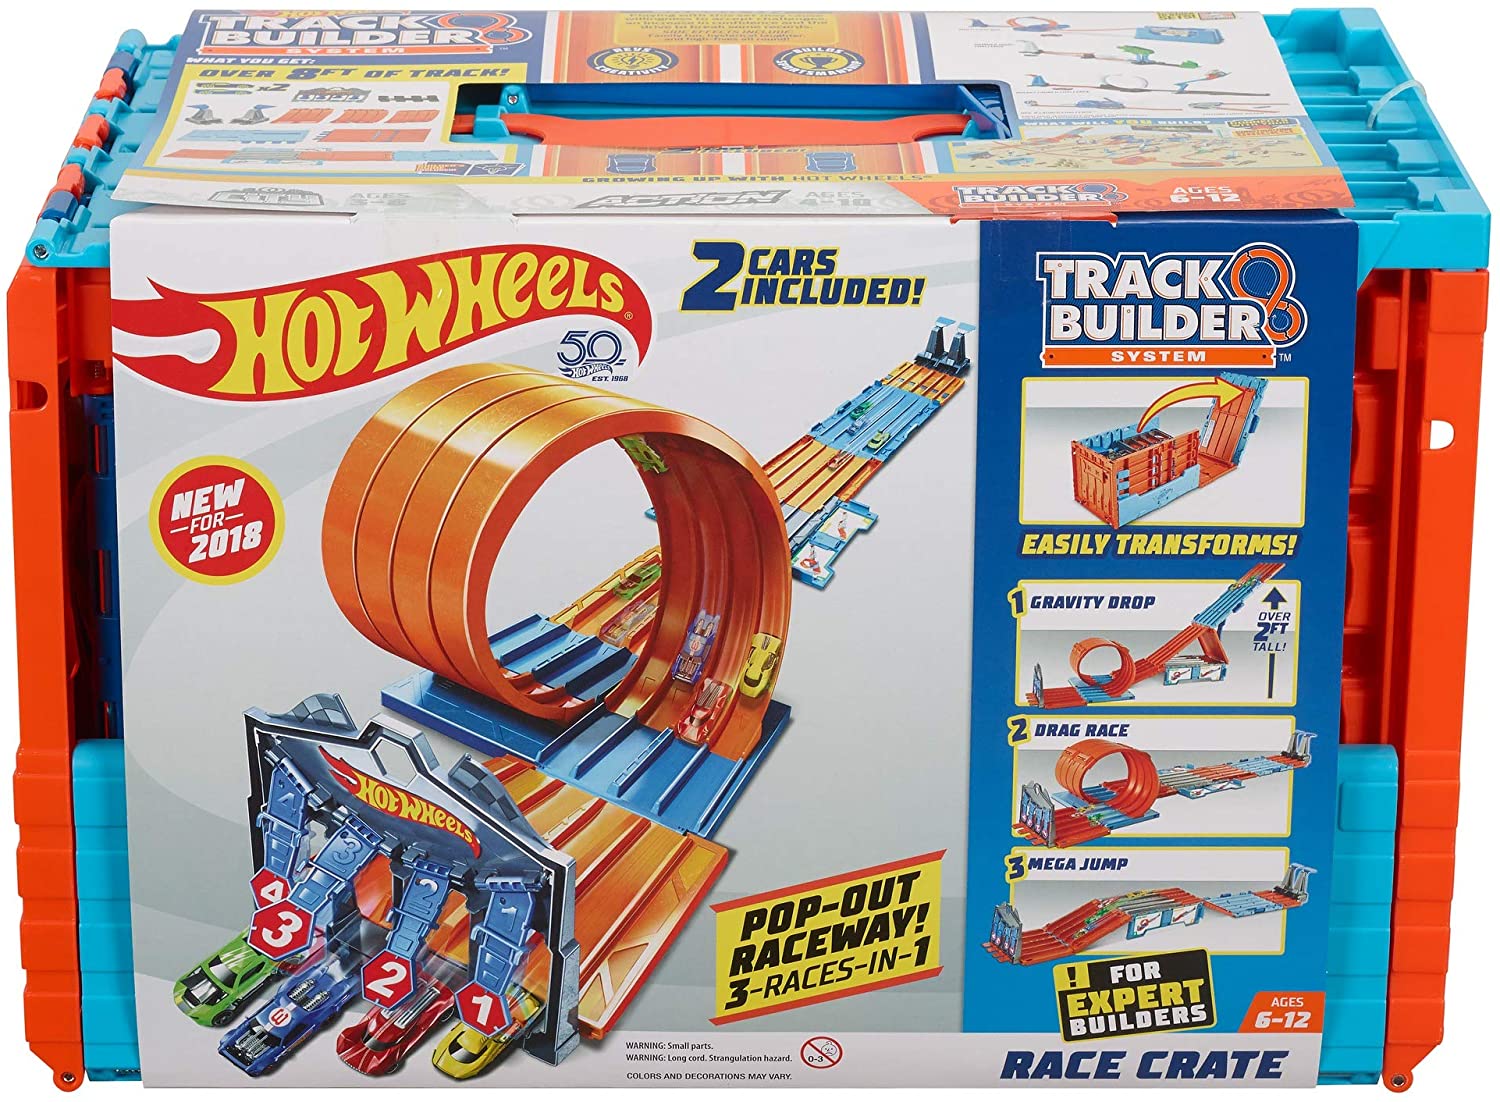 Pista Hot Wheels com Carrinho - Action - Corrida Multiloop - Mattel -  superlegalbrinquedos